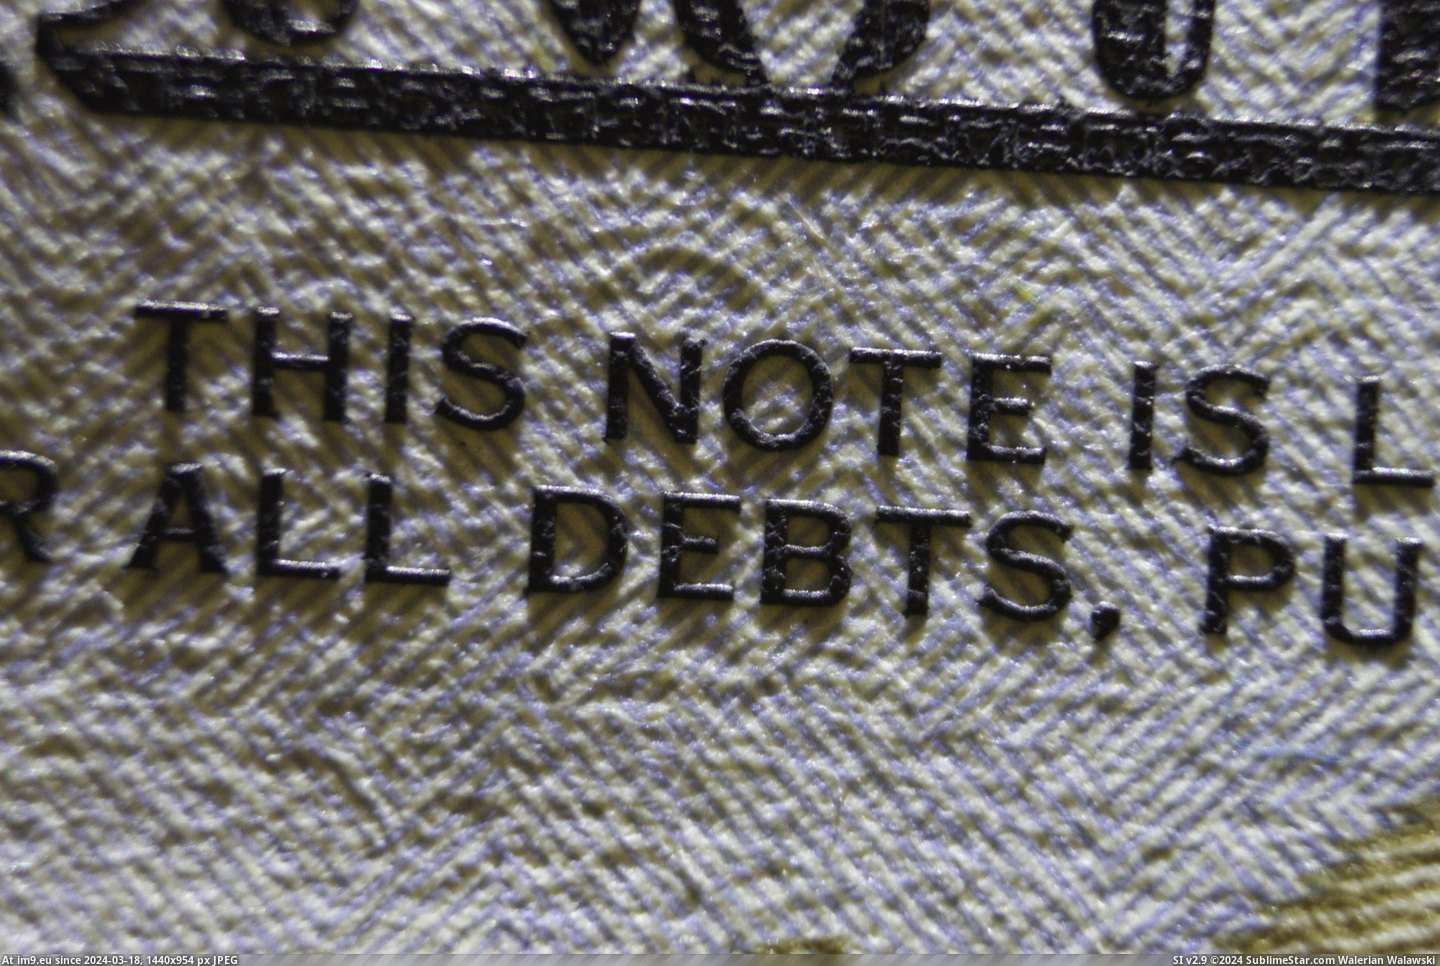 #Bill #Ink #Dollar [Pics] Ink thickness on a US dollar bill Pic. (Obraz z album My r/PICS favs))